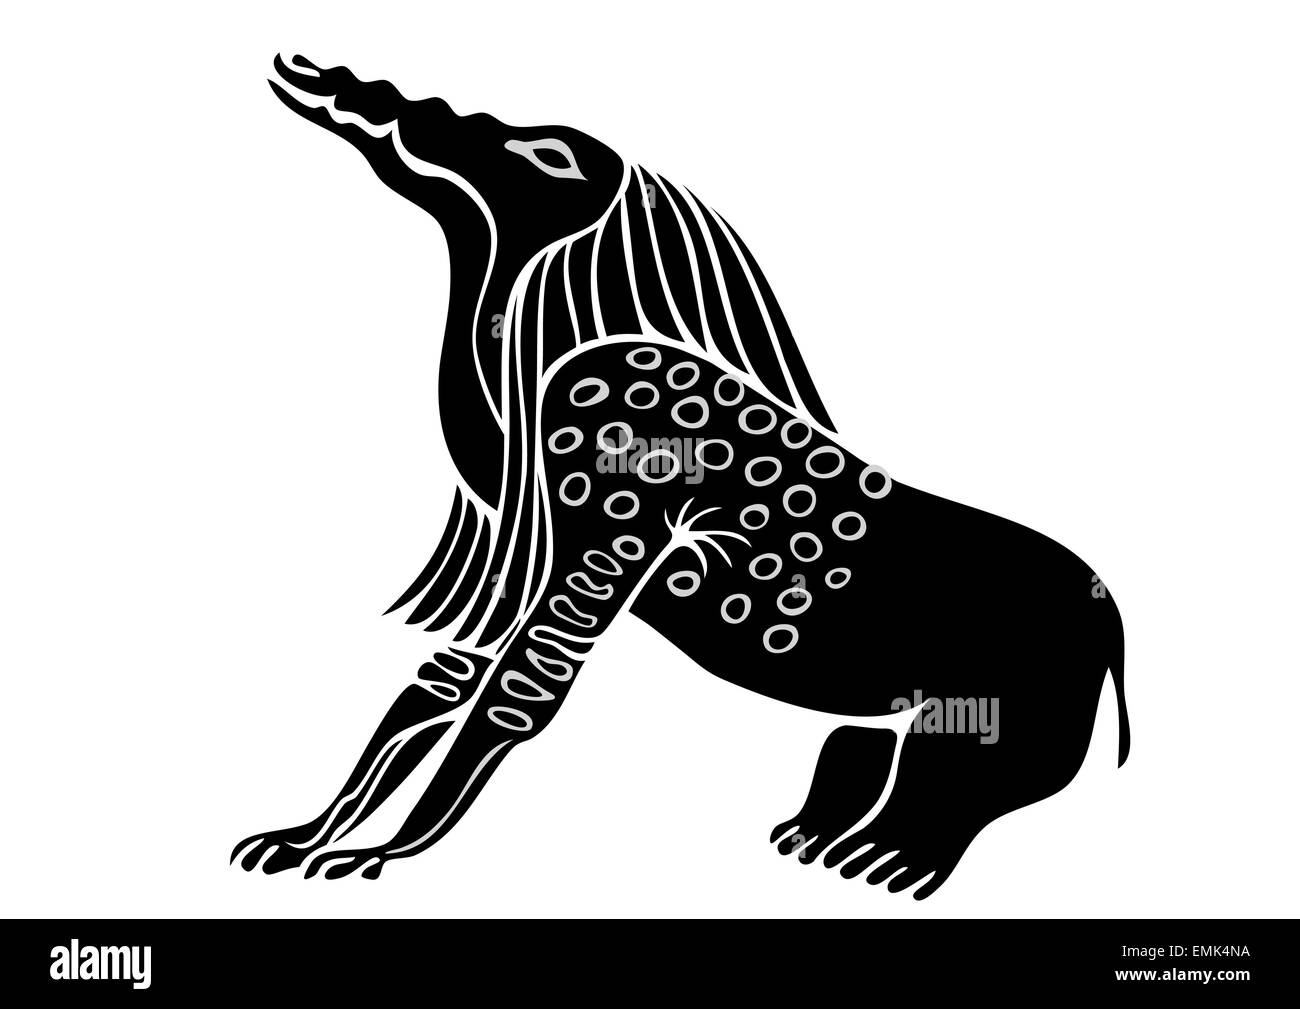 Image de l'égyptien - démon mangeur d'Os - vector Illustration de Vecteur